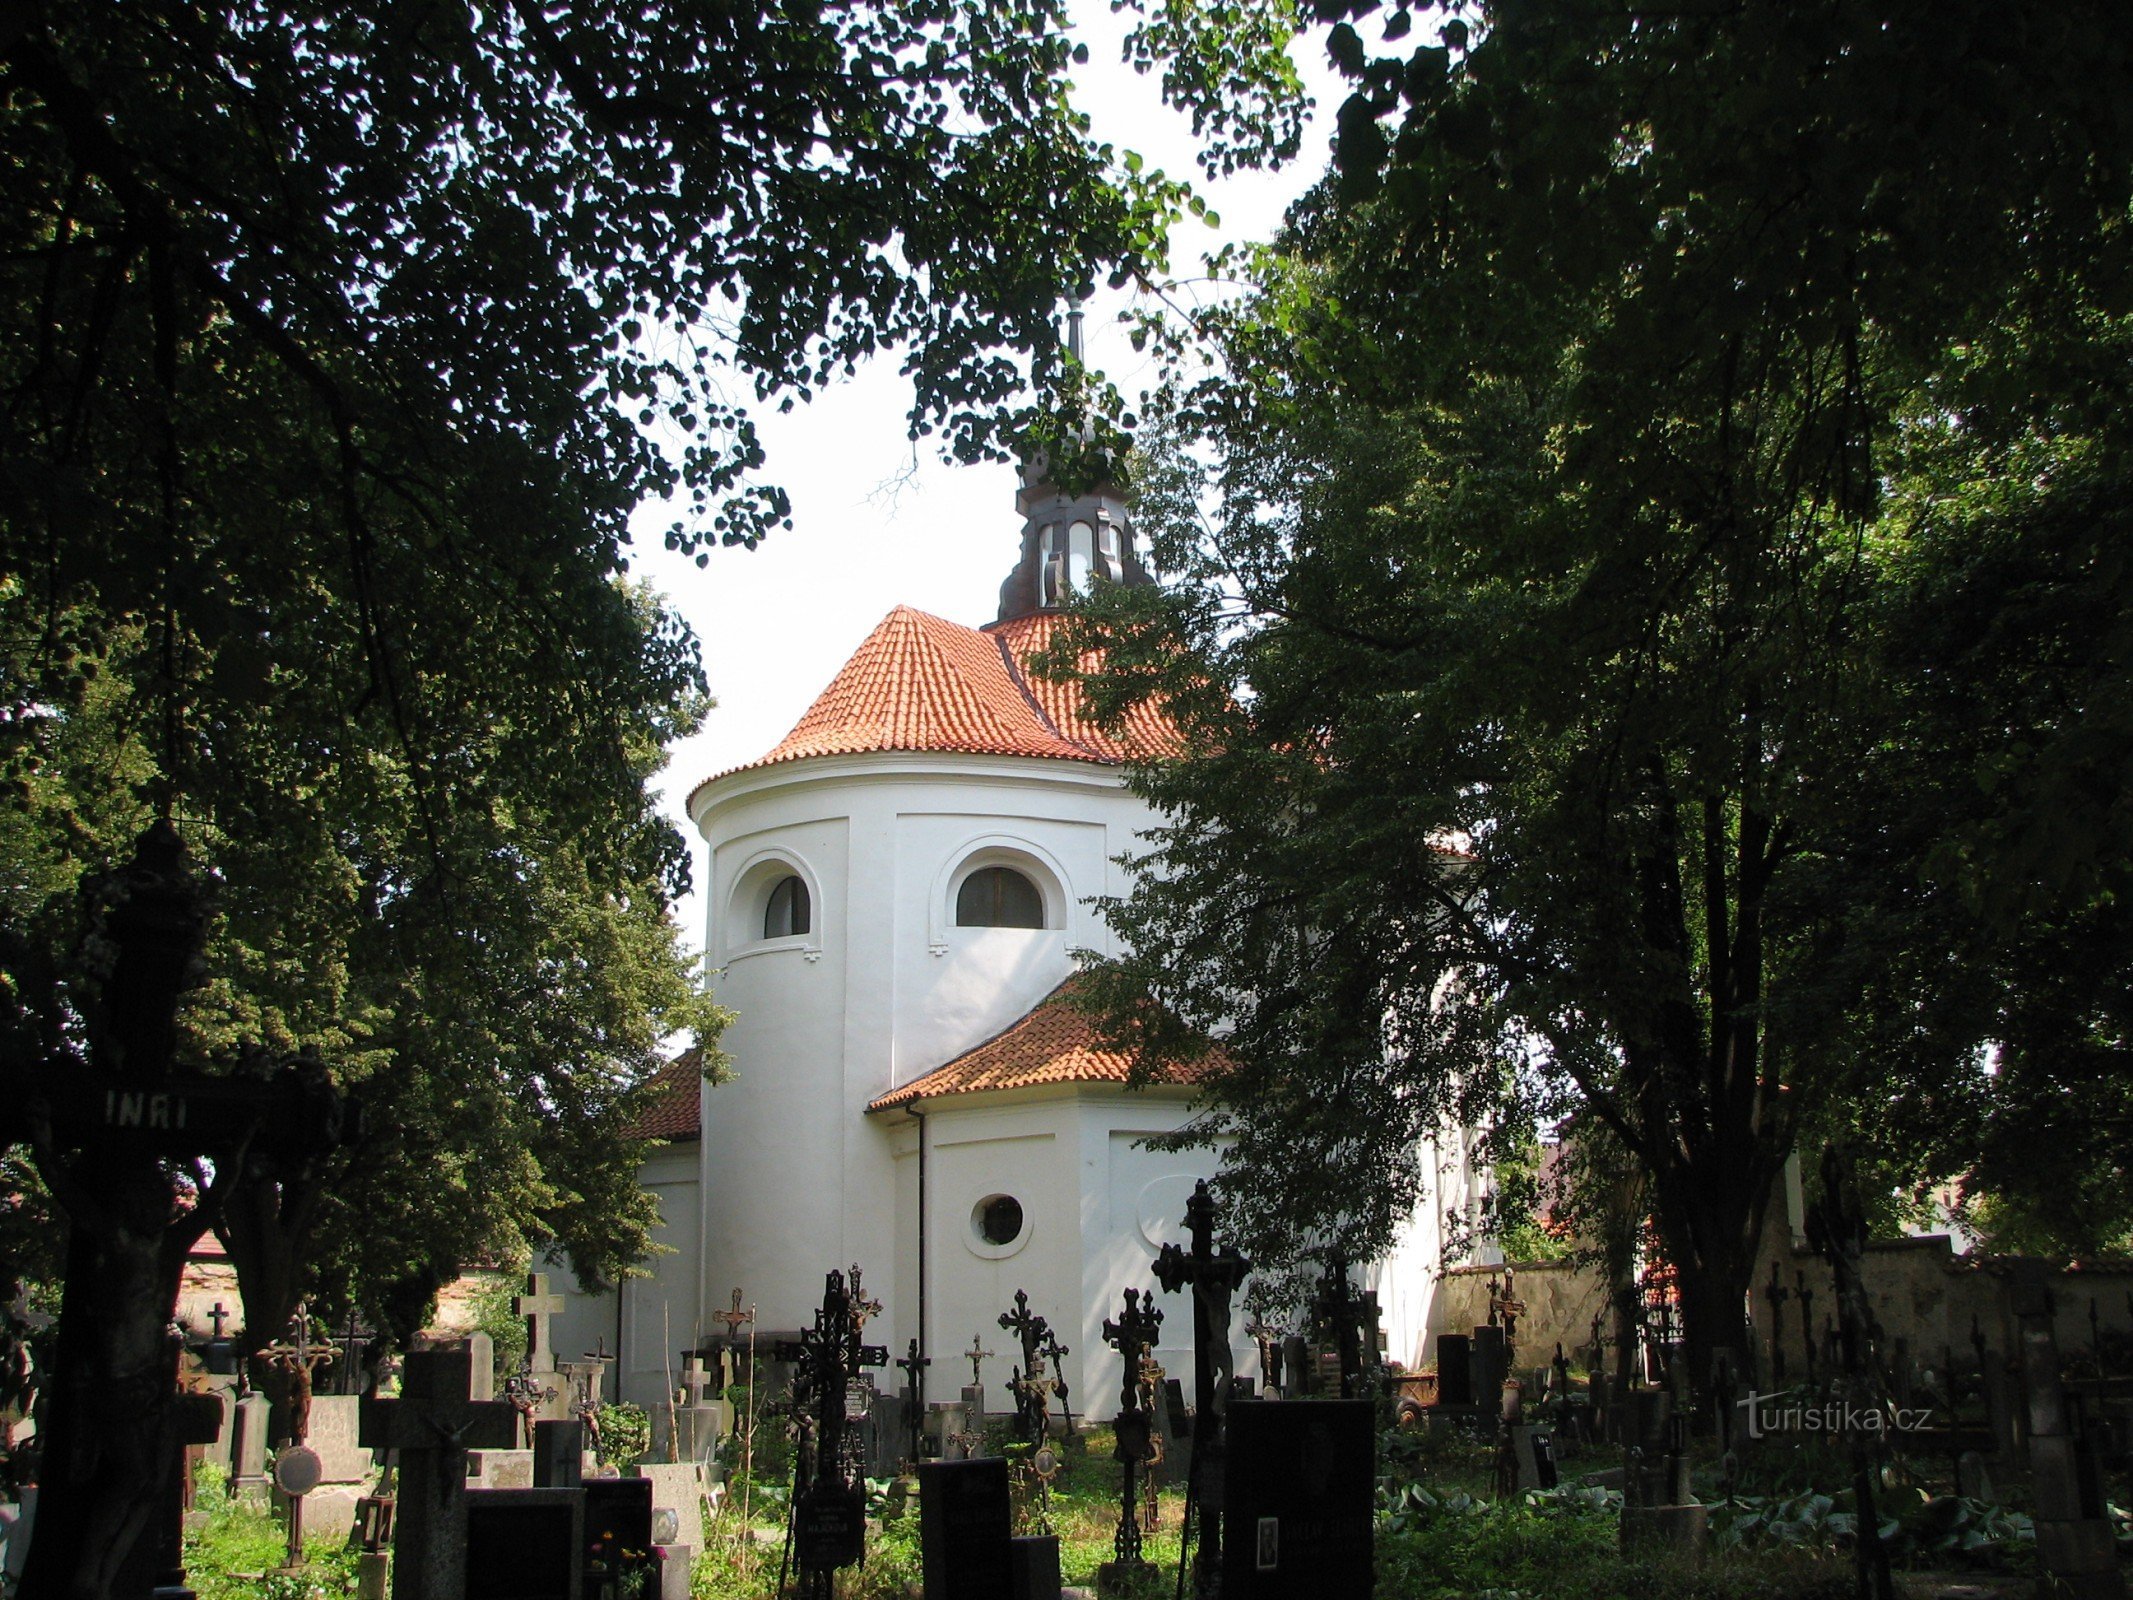 cerkev sv. Michala v Bechynu